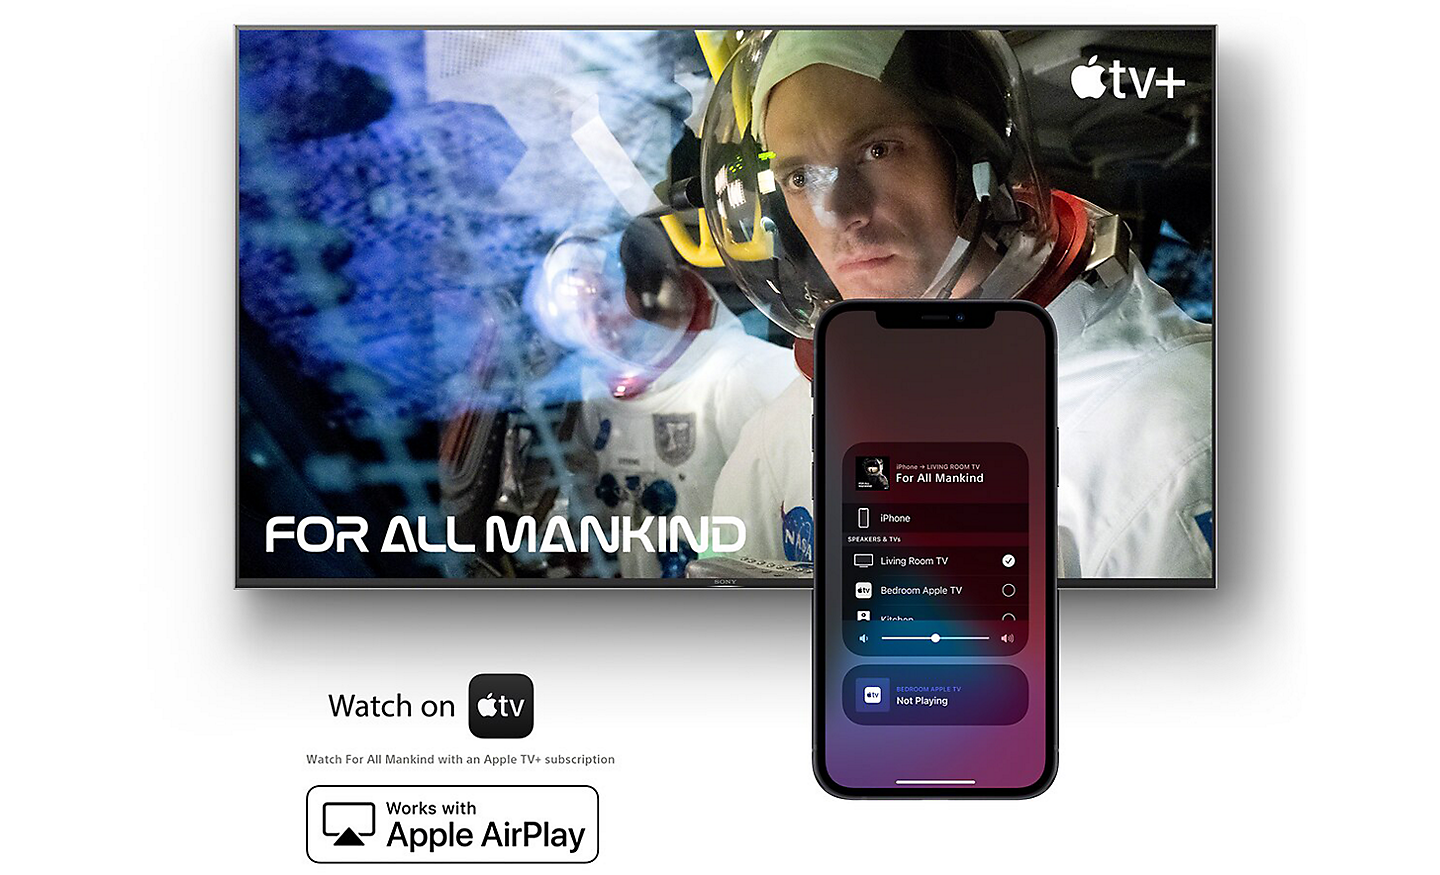 Bildschirm mit For All Mankind auf Apple TV mit einem Smartphone davor